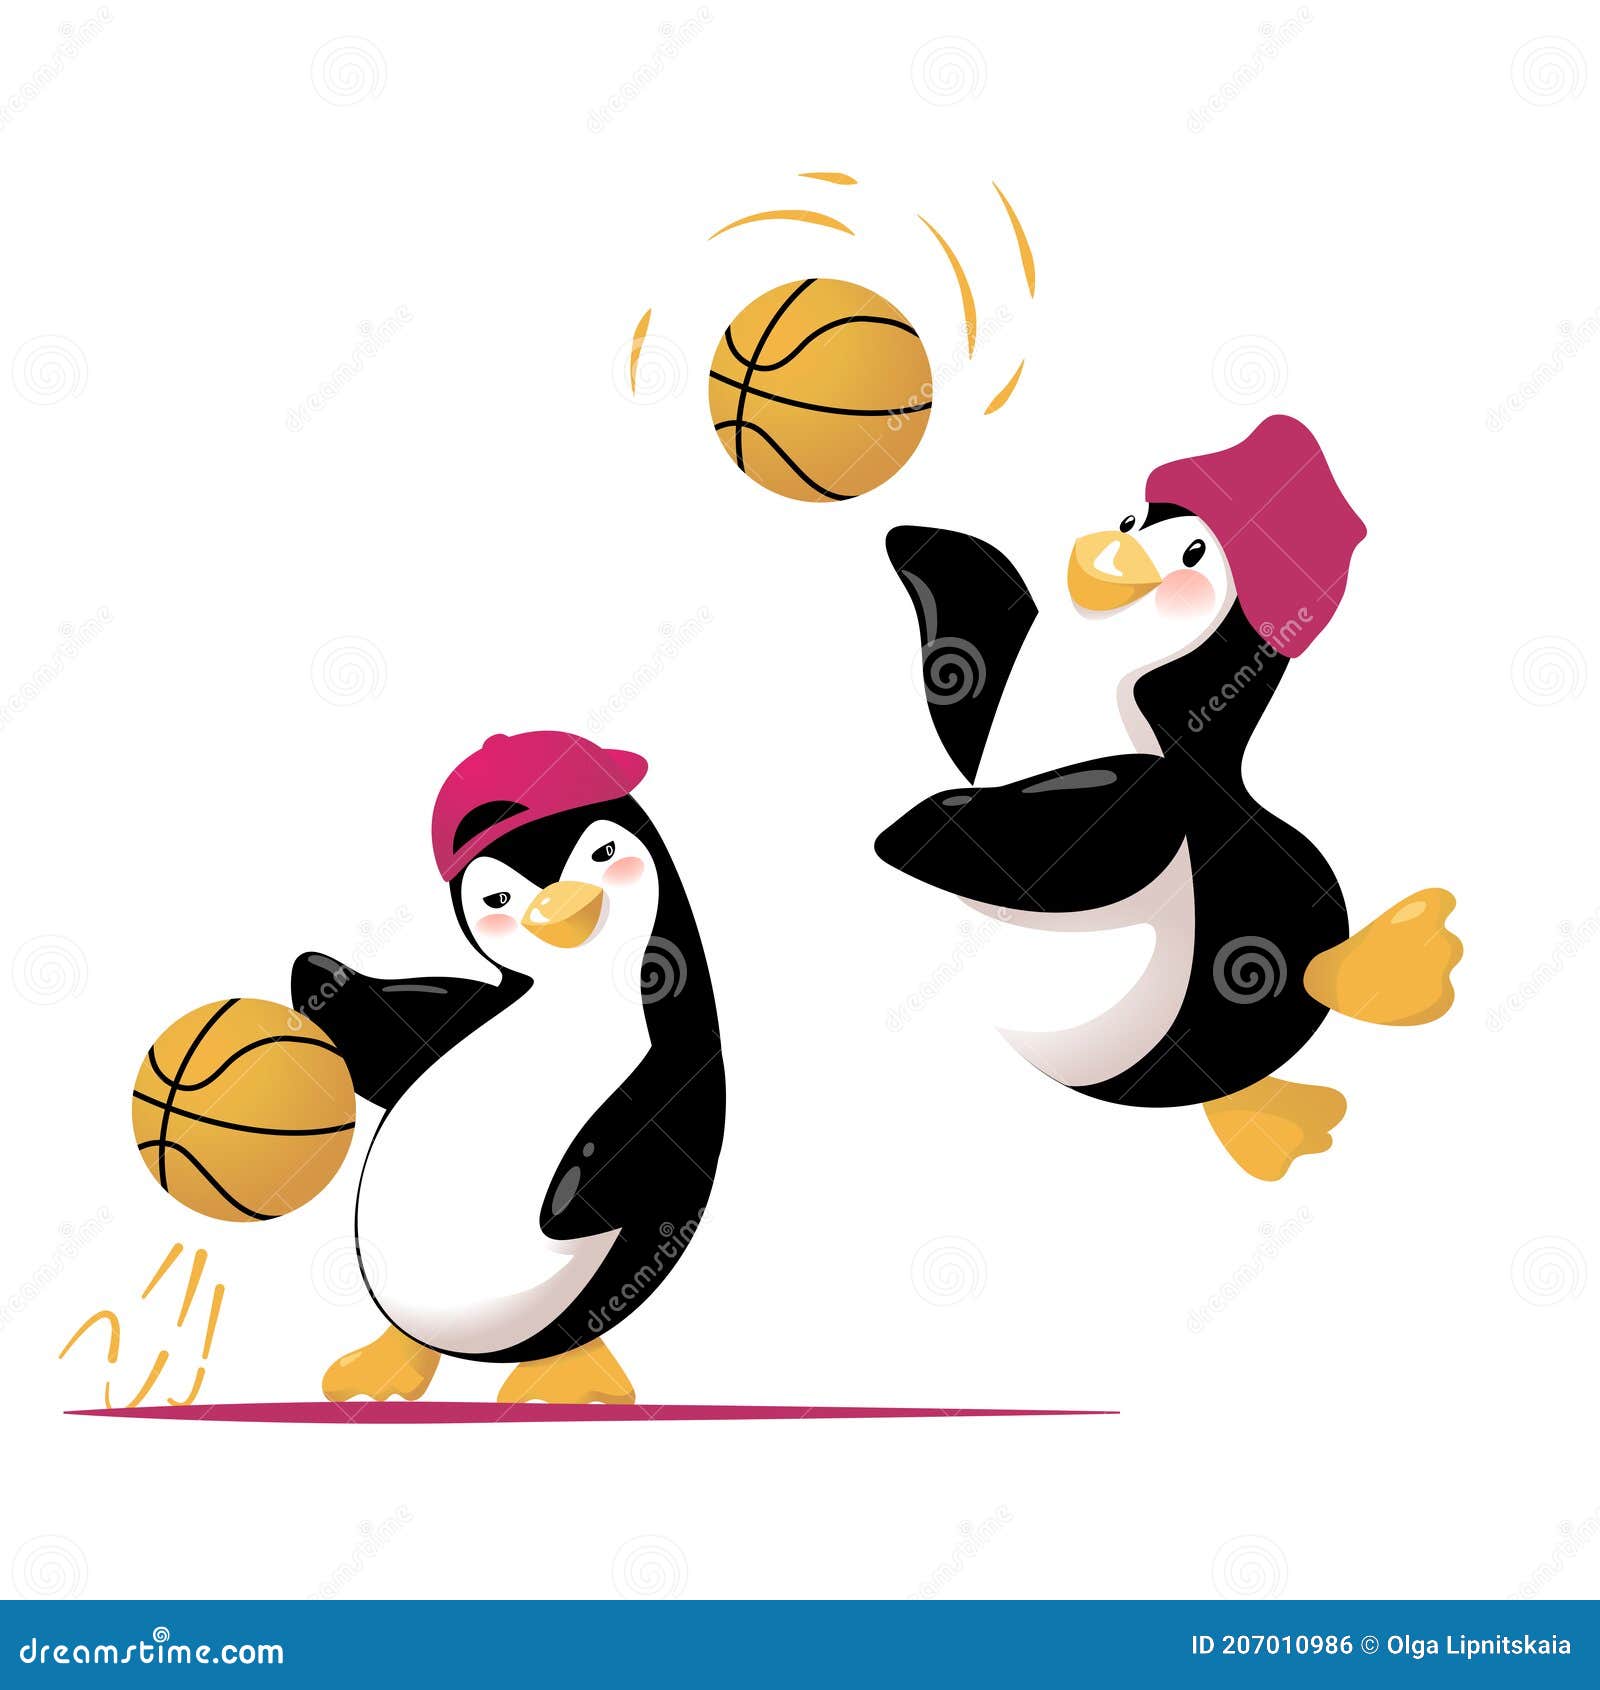 Basketball Penguin Stock Illustrations